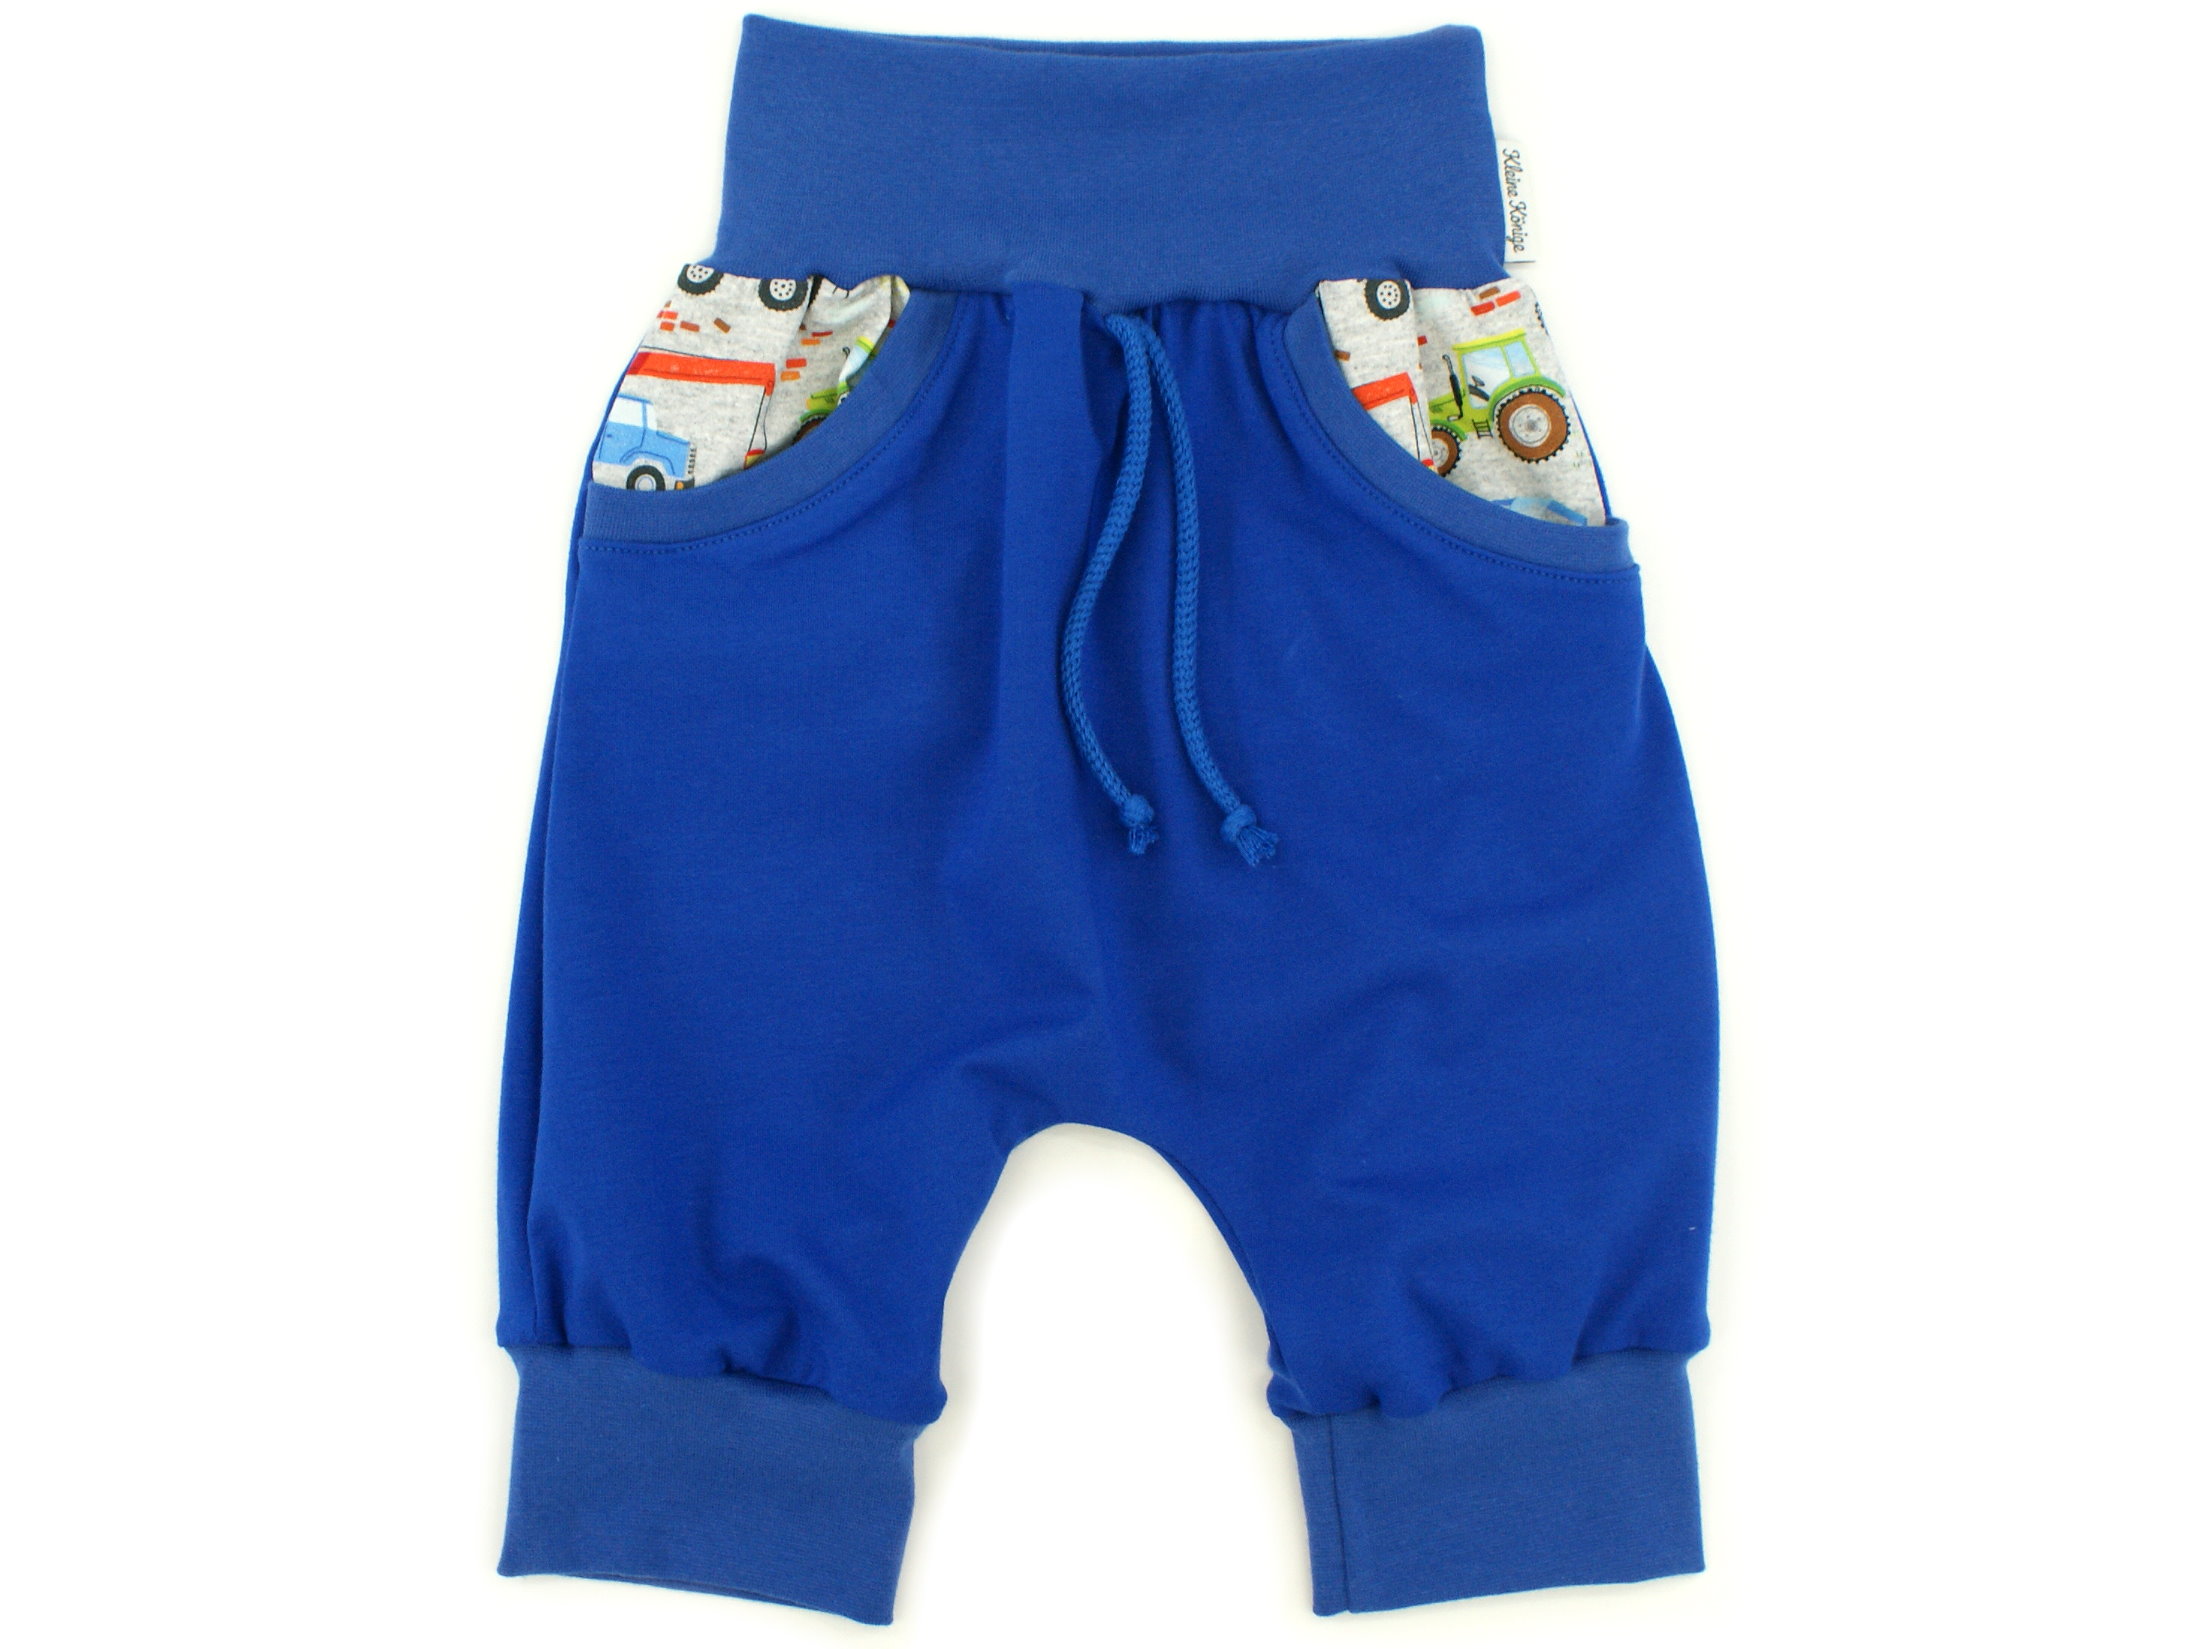 Kinder Bermuda-Shorts mit Taschen "Baufahrzeuge" royalblau